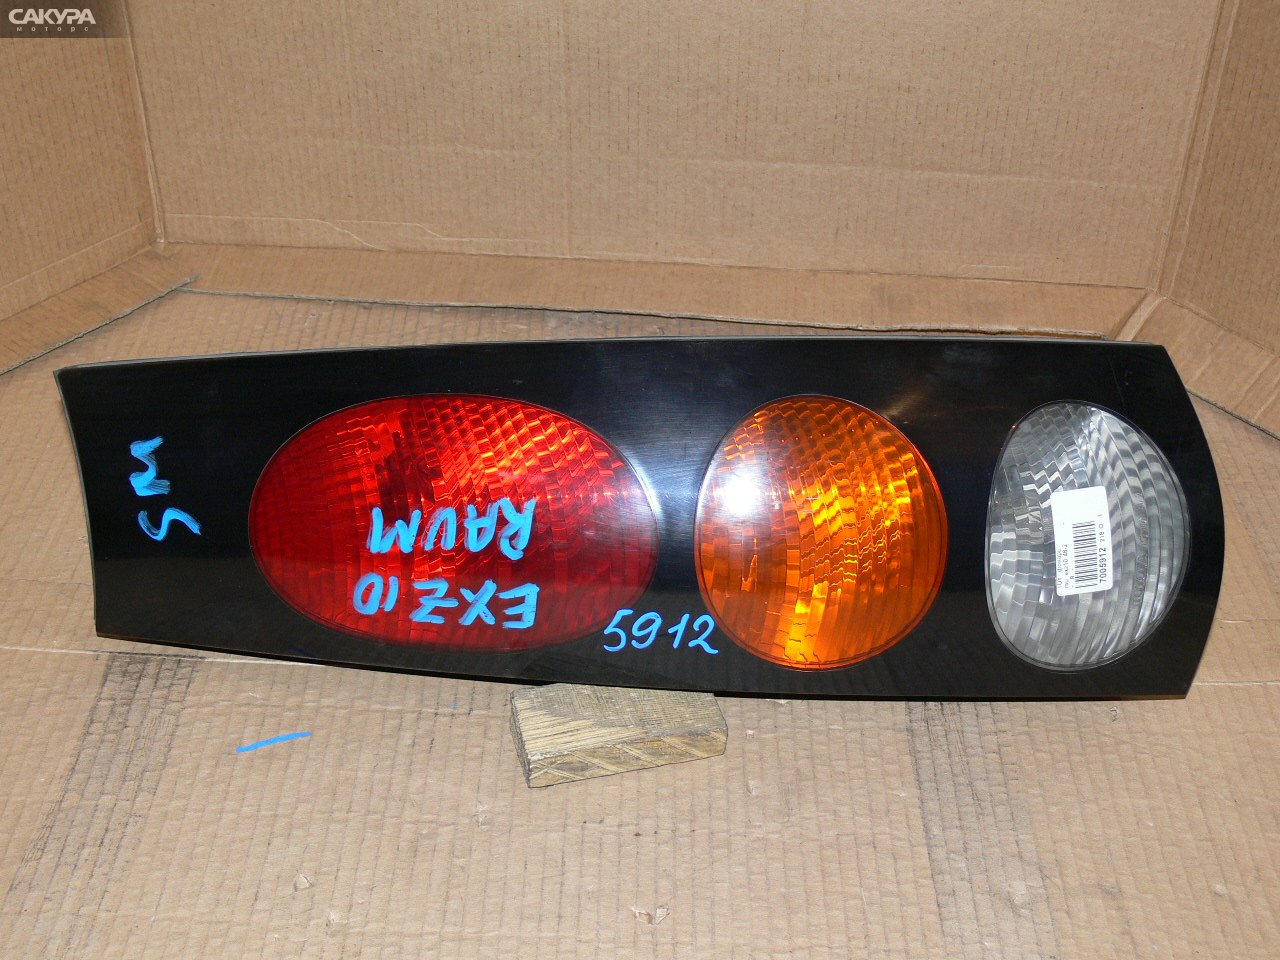 Фонарь стоп-сигнала правый Toyota Raum EXZ10 46-2: купить в Сакура Иркутск.